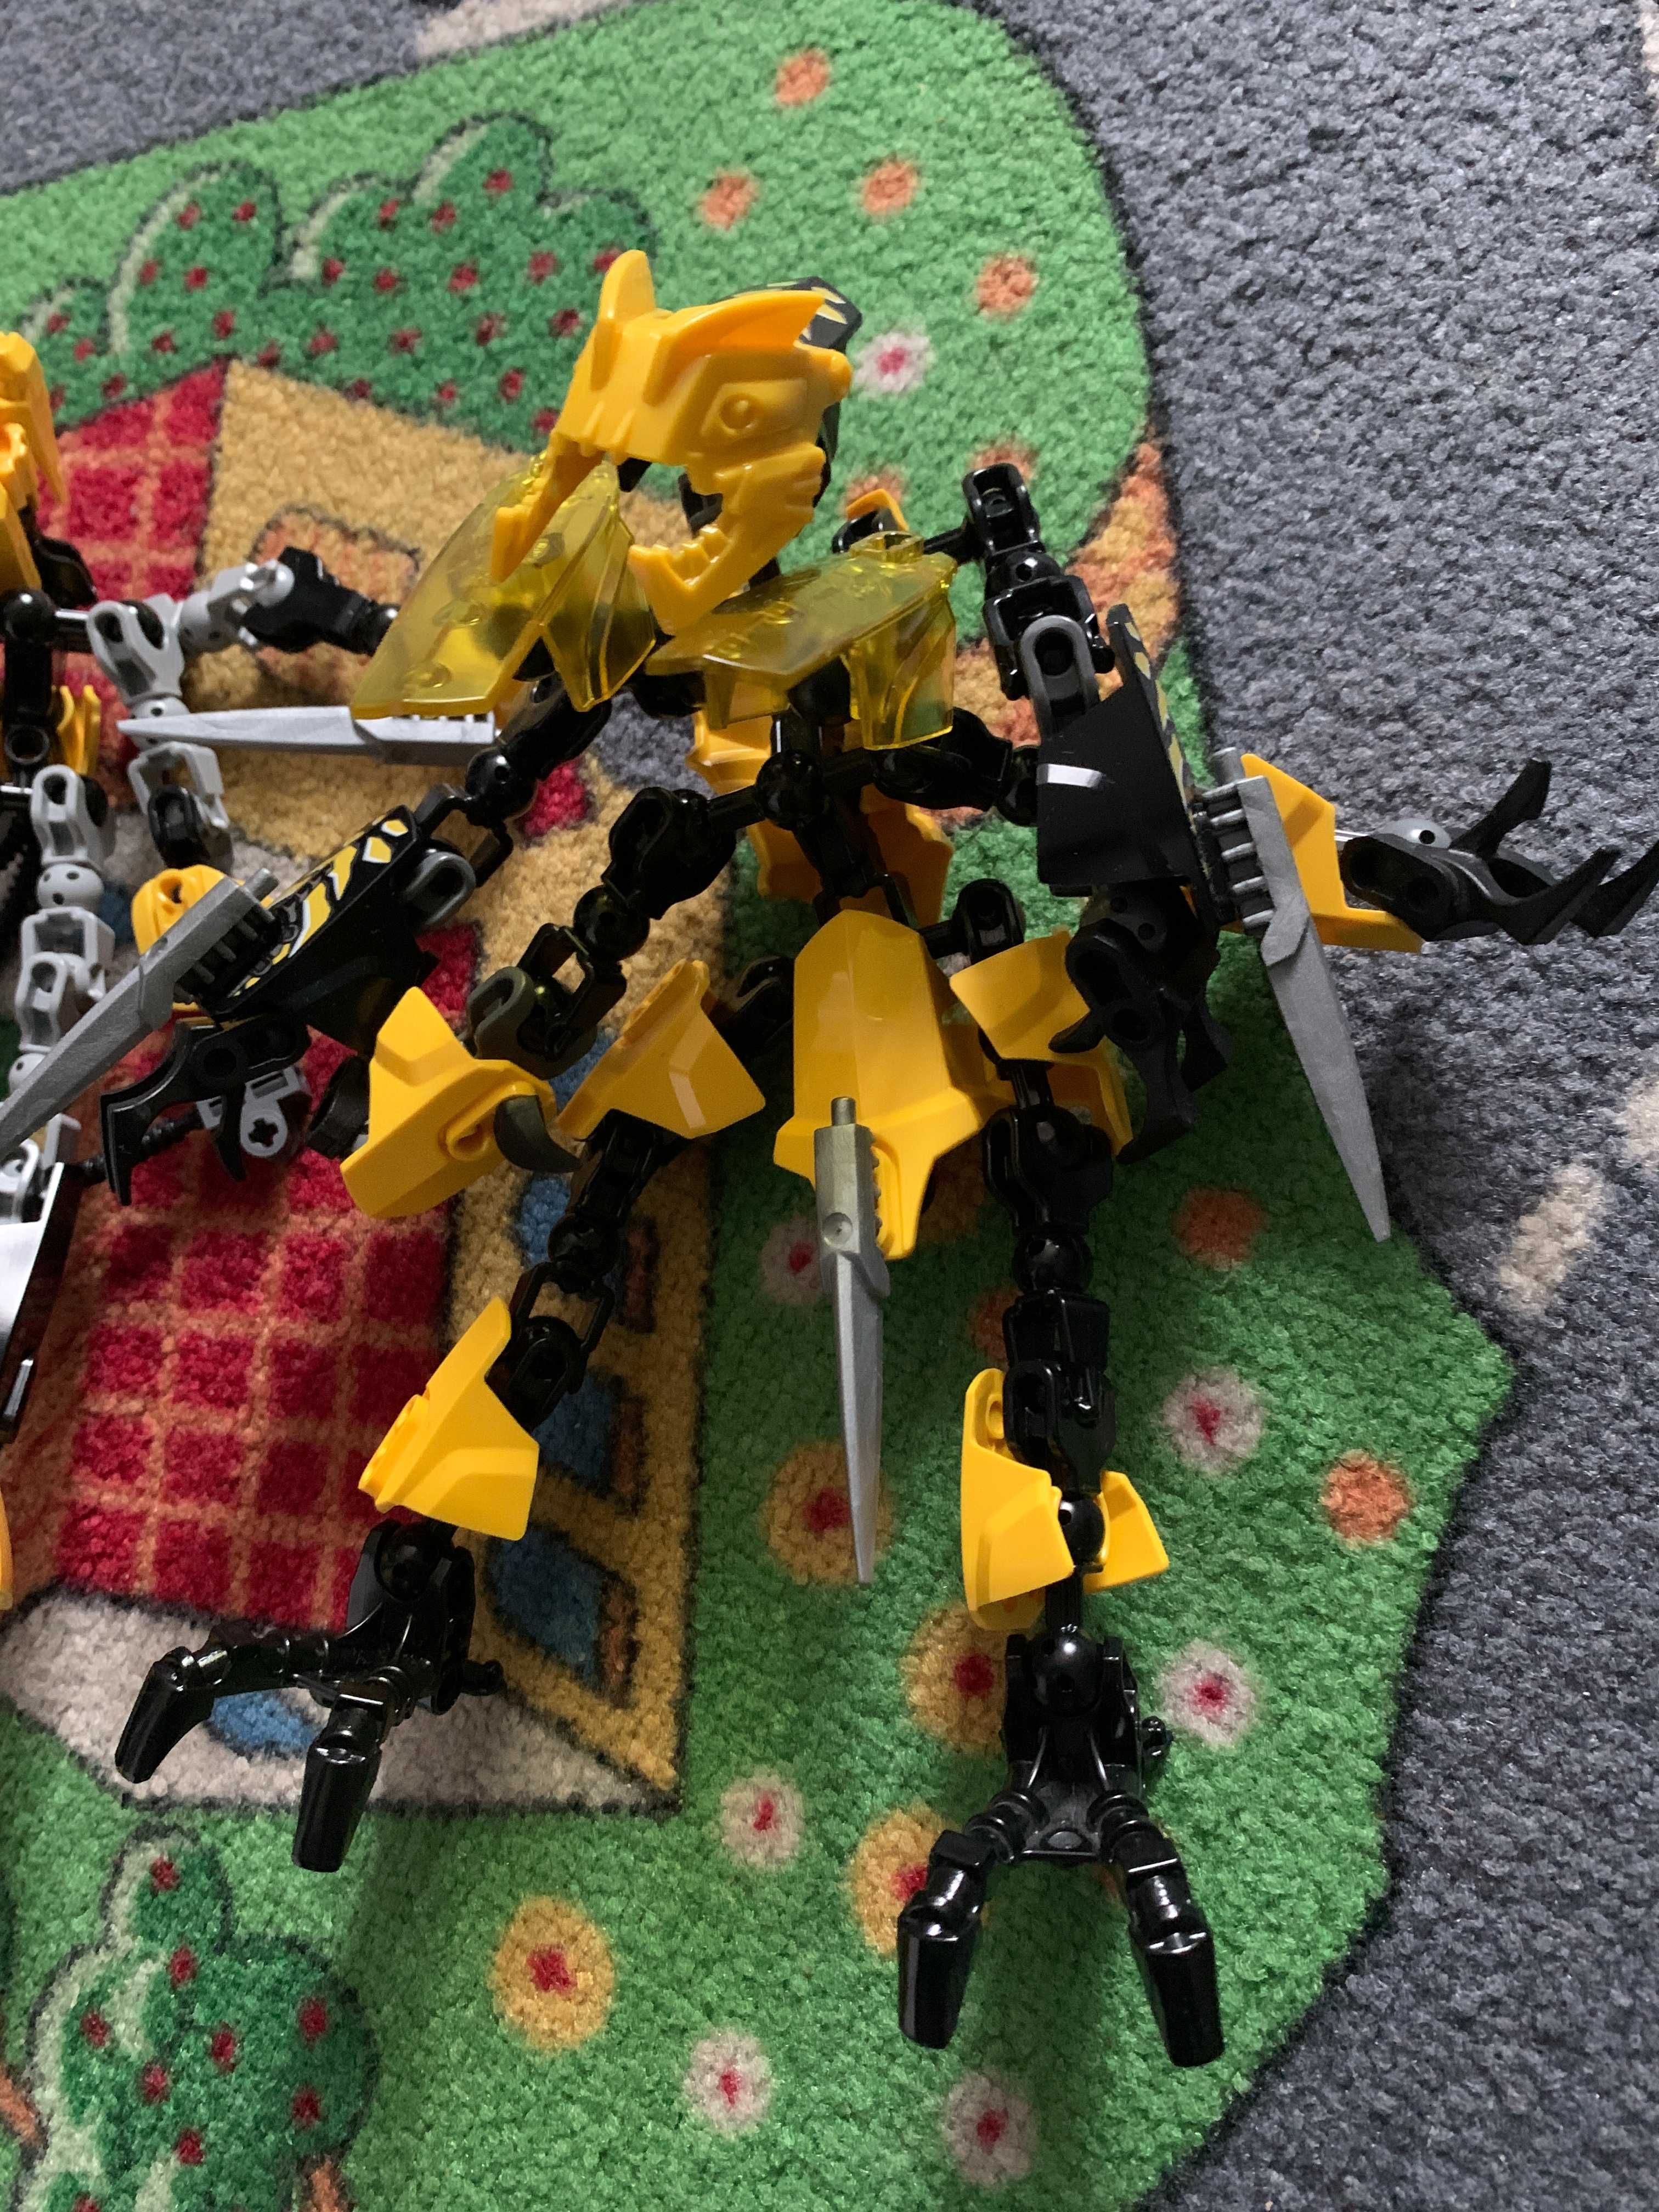 Lego roboty Hero Factory 8604 Bionicle 6229 hero 2231